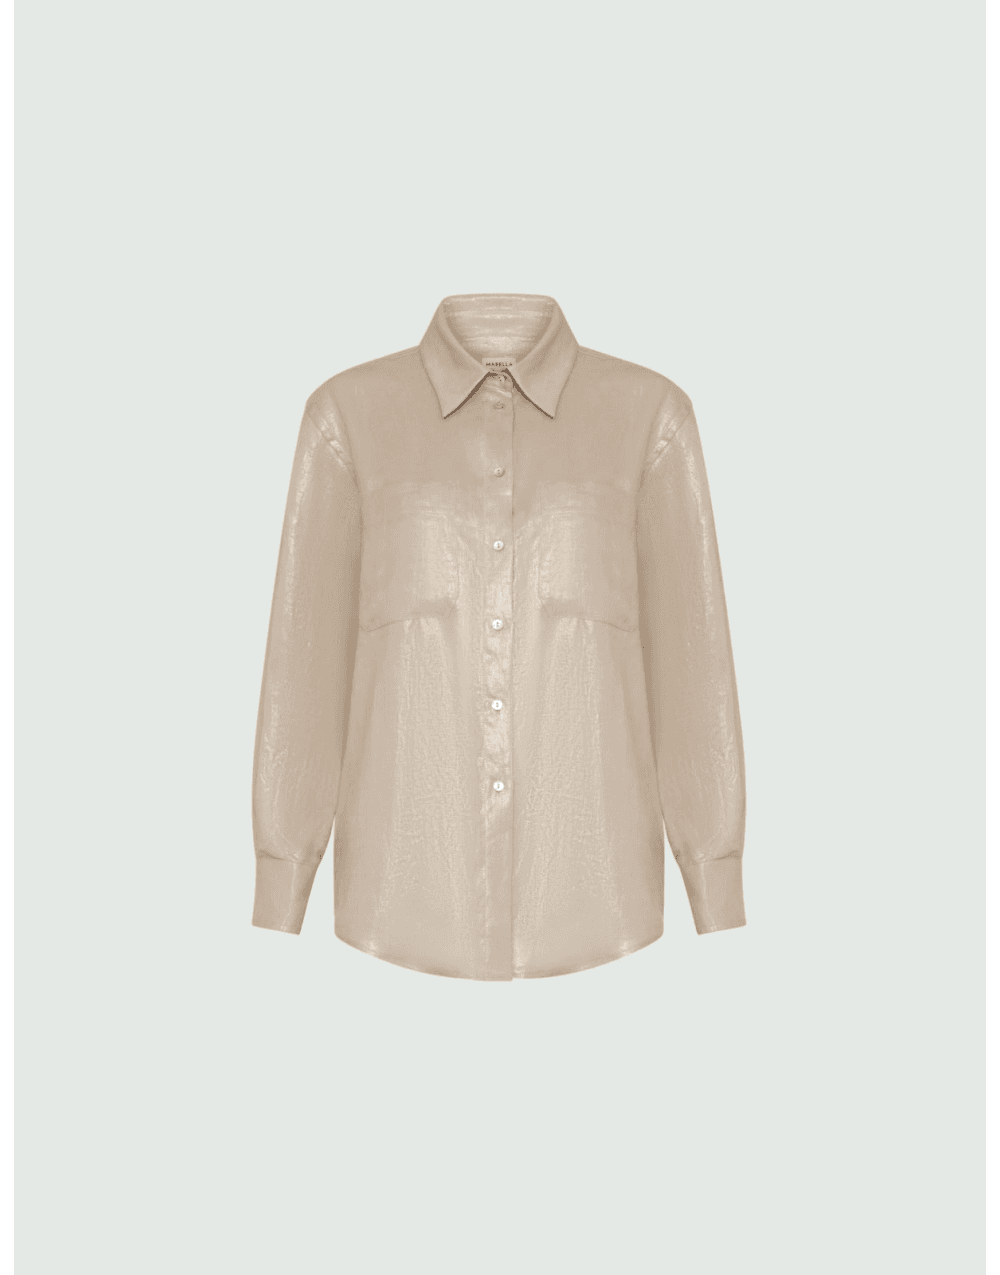 Marella Marella Gente Sparkle Lurex Linen Shirt Size: 12, Col: Gold